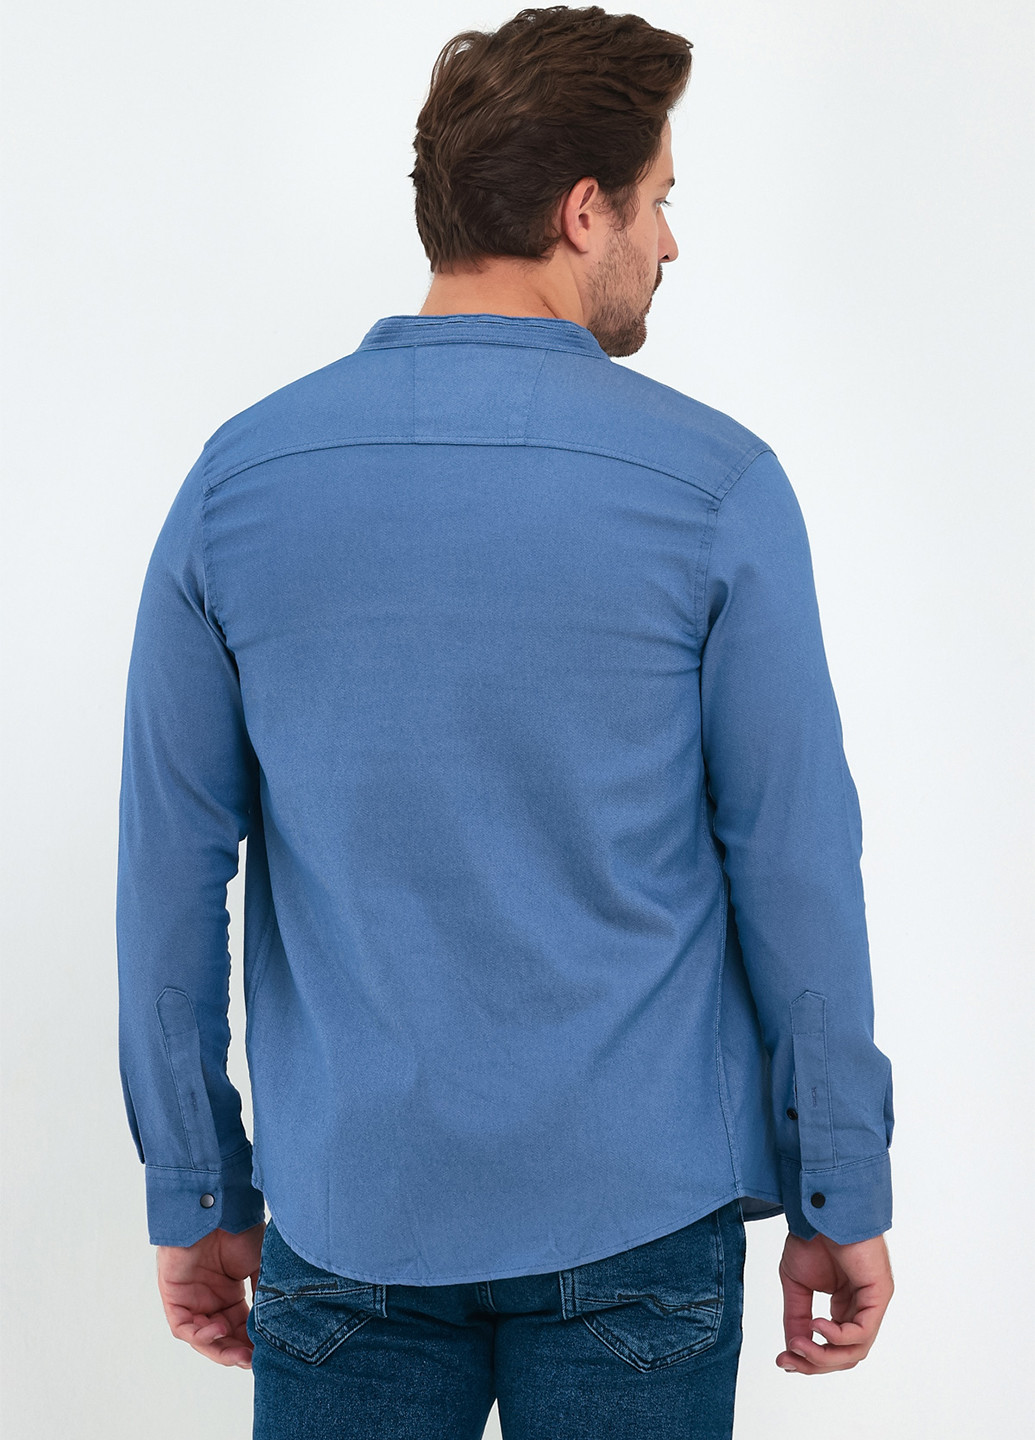 Индиго джинсовая рубашка однотонная Trend Collection